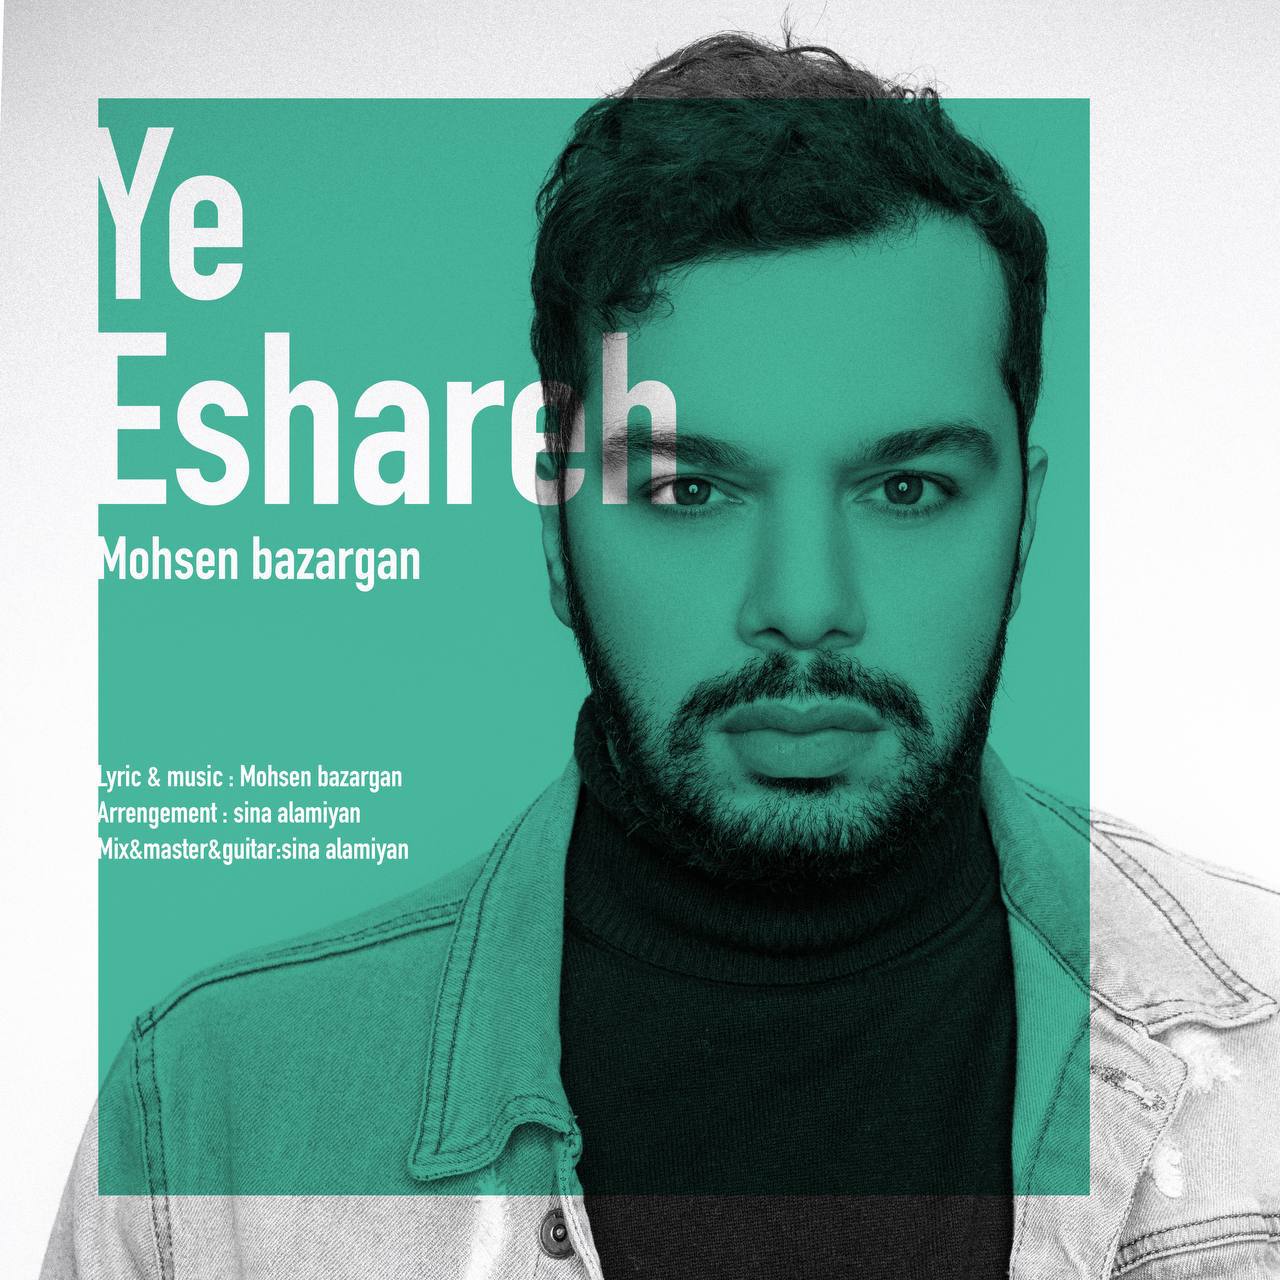  دانلود آهنگ جدید محسن بازرگان - یه اشاره | Download New Music By Mohsen Bazargan - Ye Eshareh